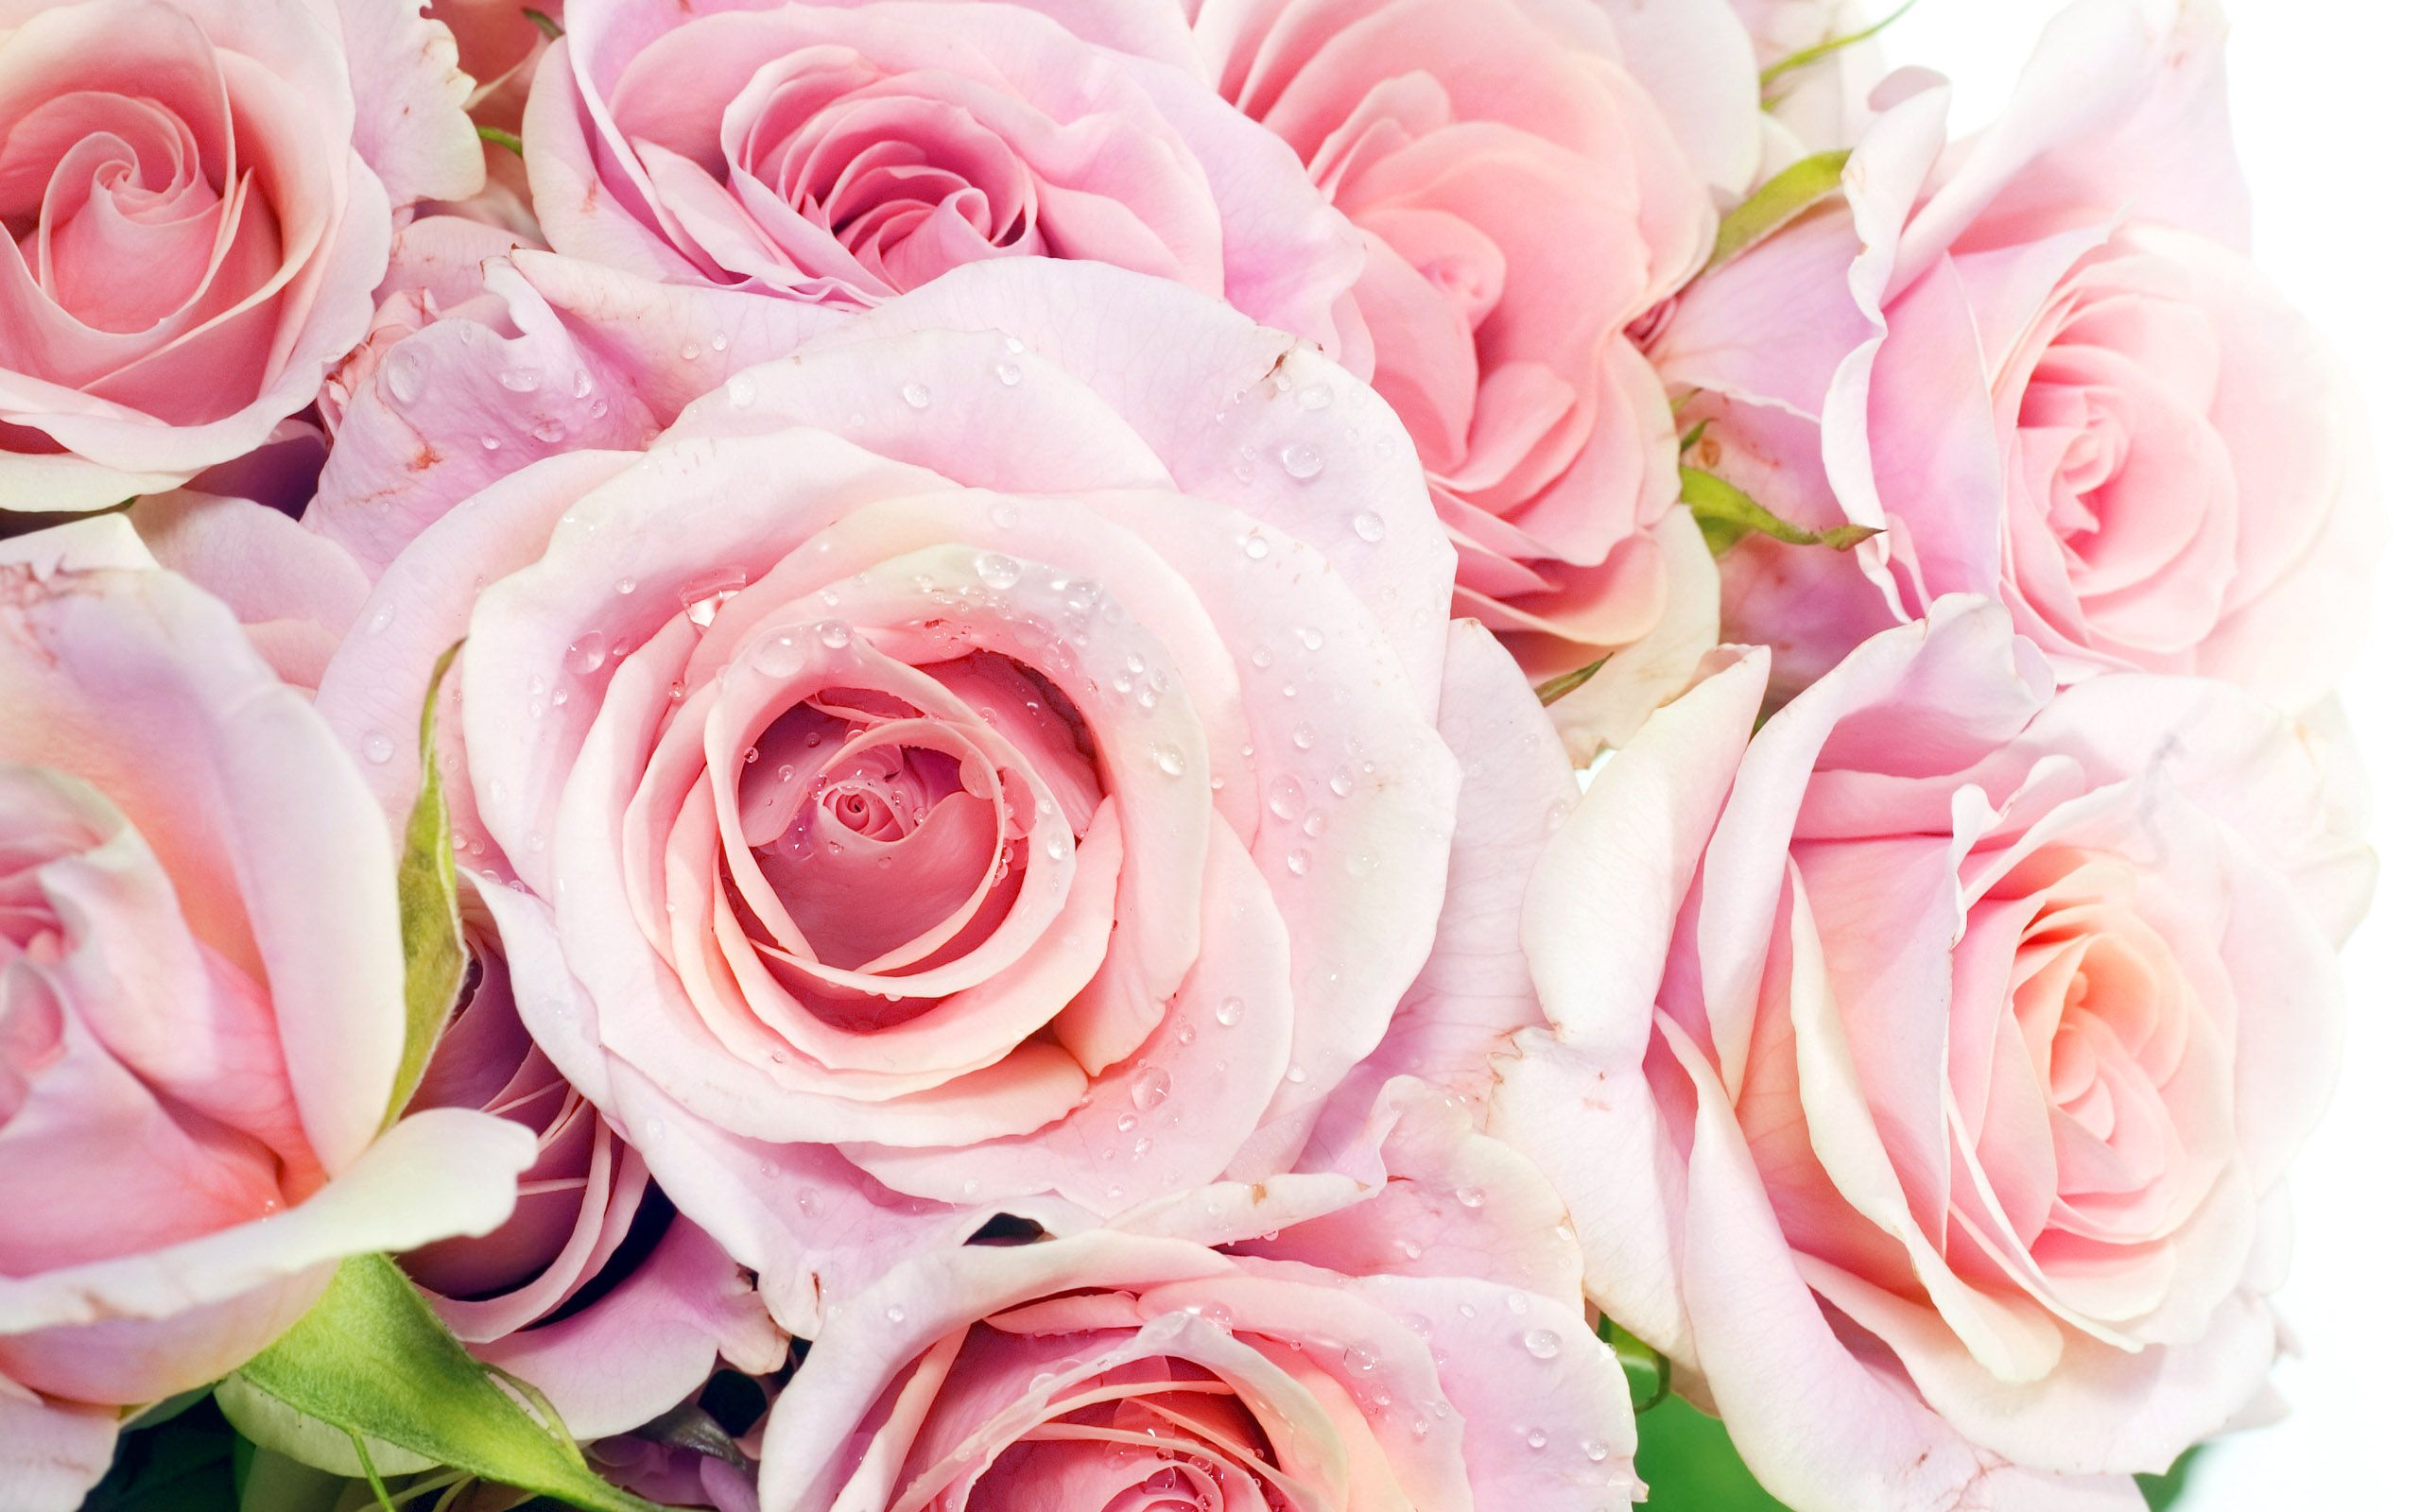 Pretty Pink Roses - Roses Wallpaper (34610937) - Fanpop